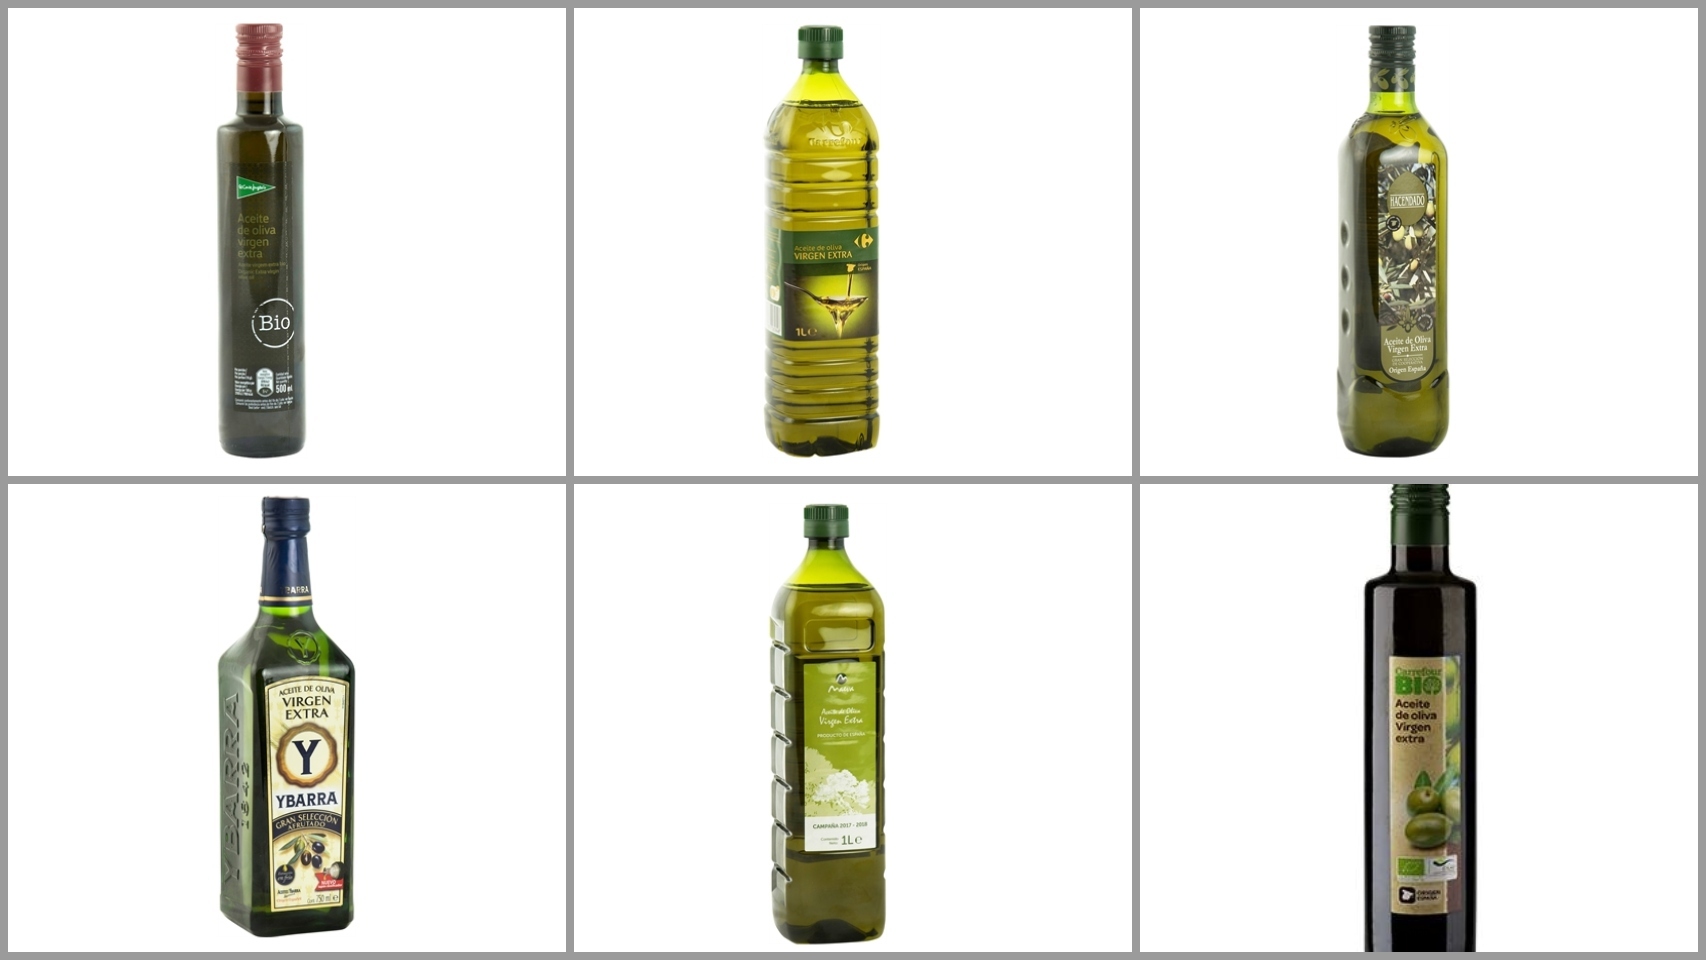 DIA ALMAZARA DEL OLIVAR aceite de orujo de oliva botella 1 lt : :  Alimentación y bebidas